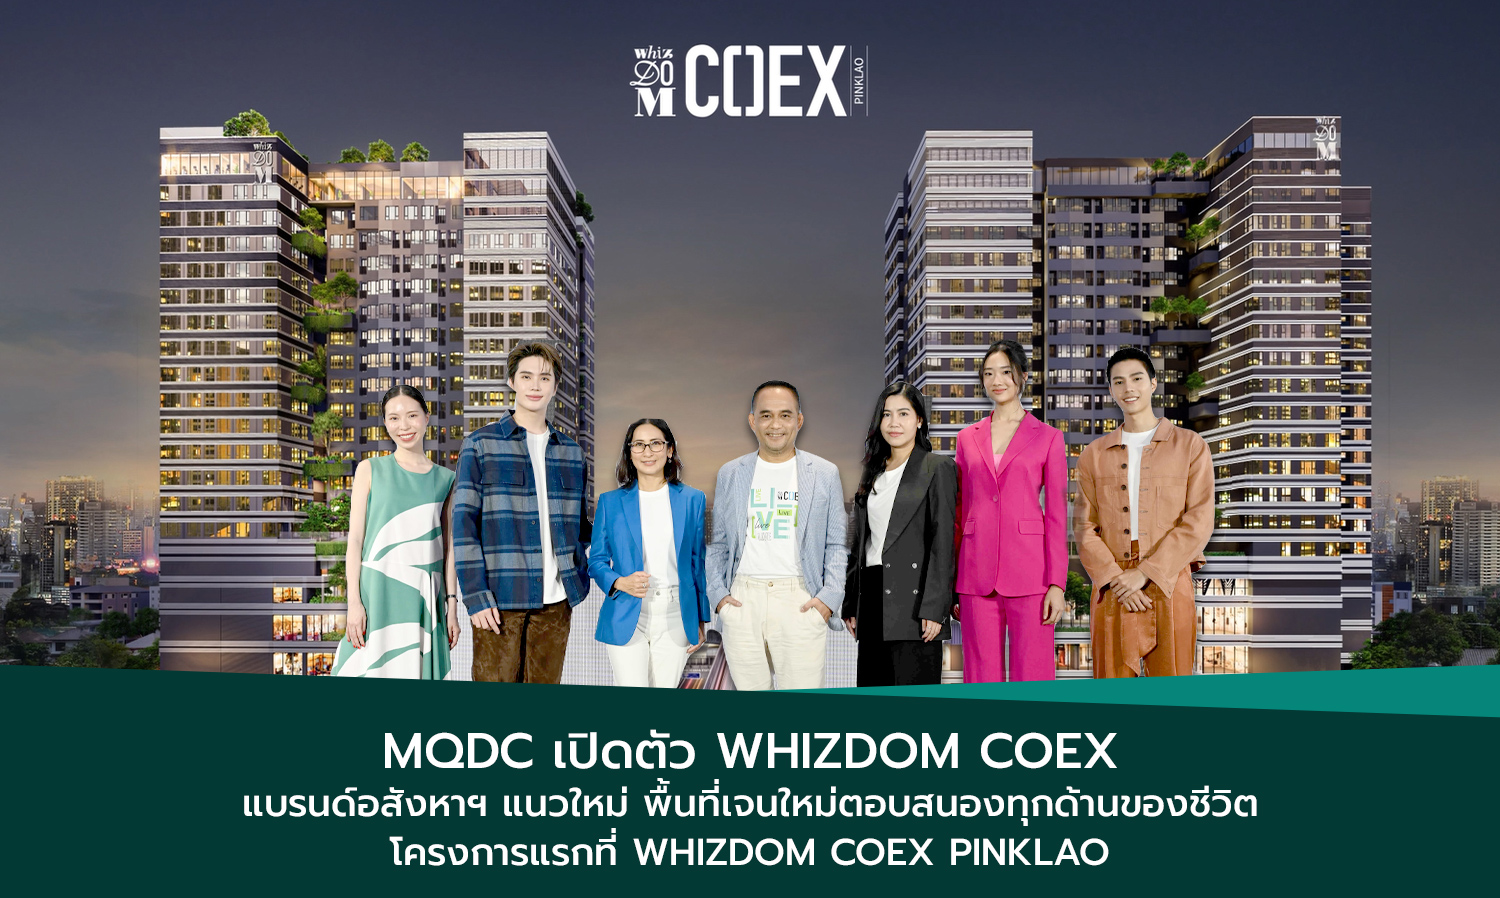 MQDC เปิดตัว Whizdom COEX แบรนด์อสังหาฯ แนวใหม่​ พื้นที่เจนใหม่ตอบสนองทุกด้านของชีวิต​ โครงการแรกที่ Whizdom COEX Pinklao